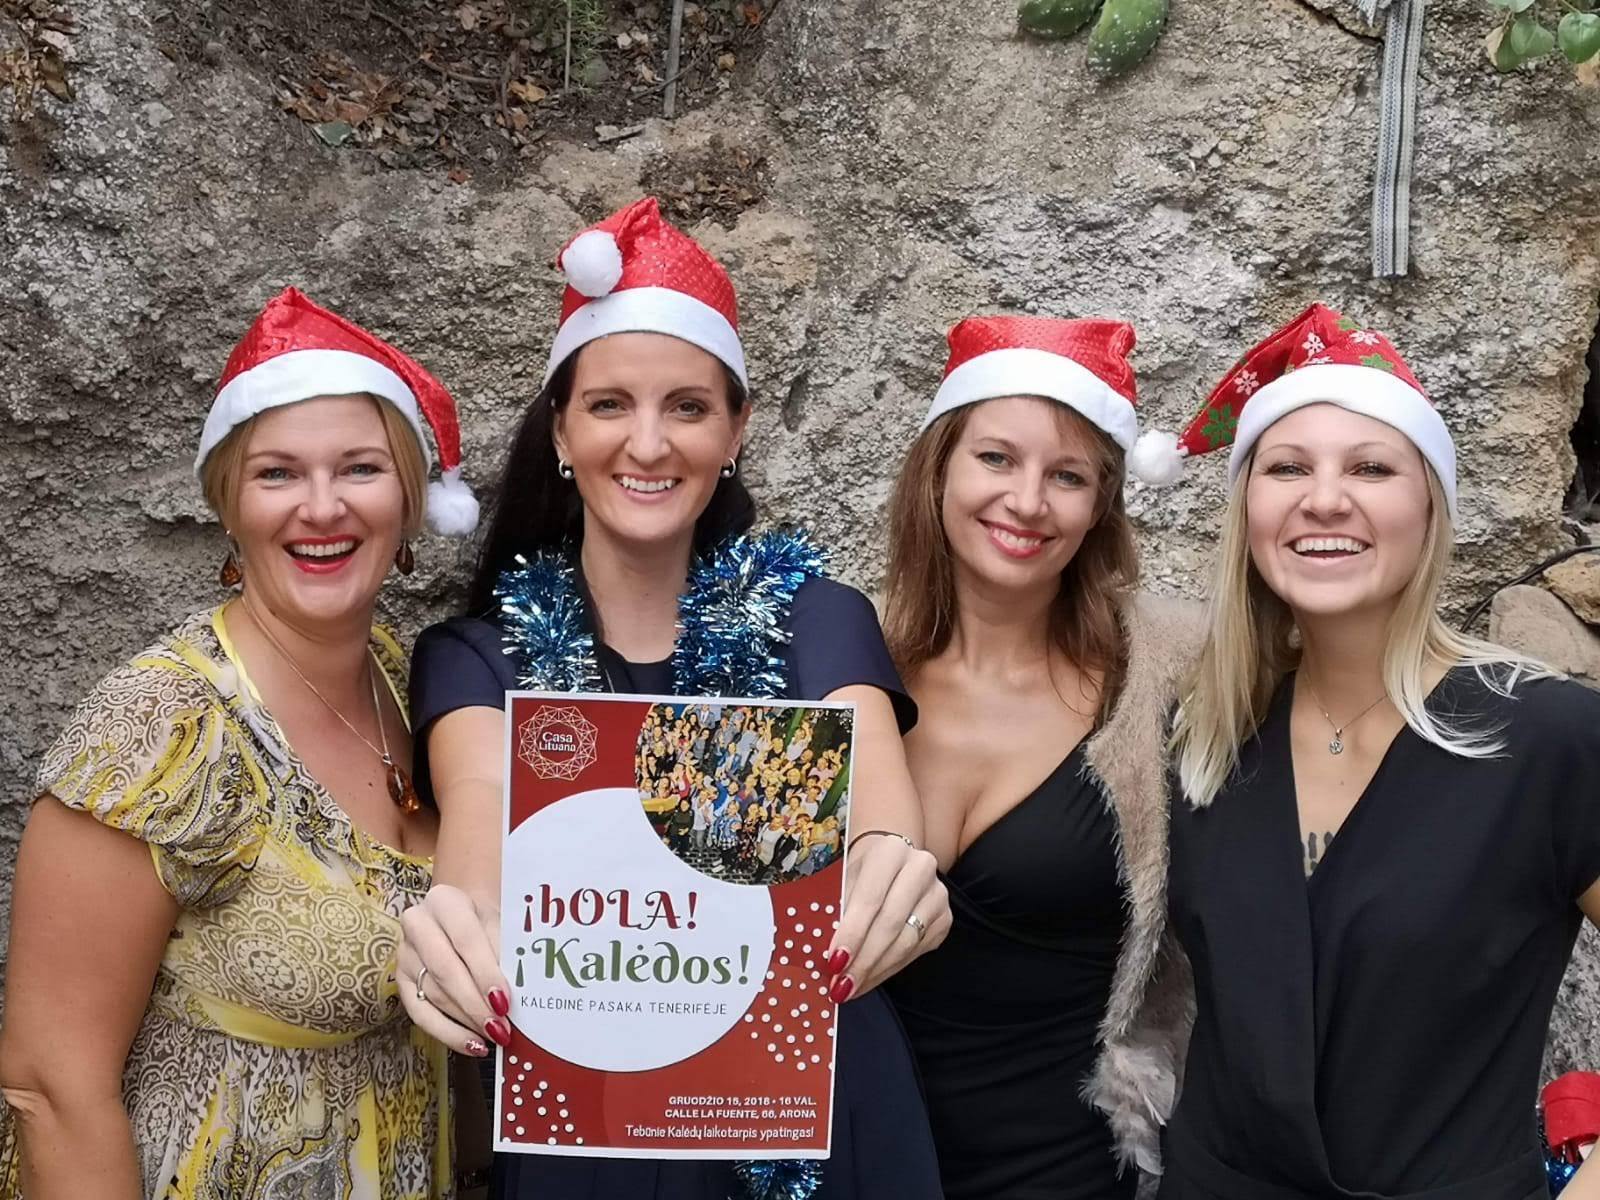 ¡hOLA! Kalėdos! Kalėdinė pasaka Tenerifėje 2018, renginiai, šventės, lietuvių bendruomenė Tenerifėje